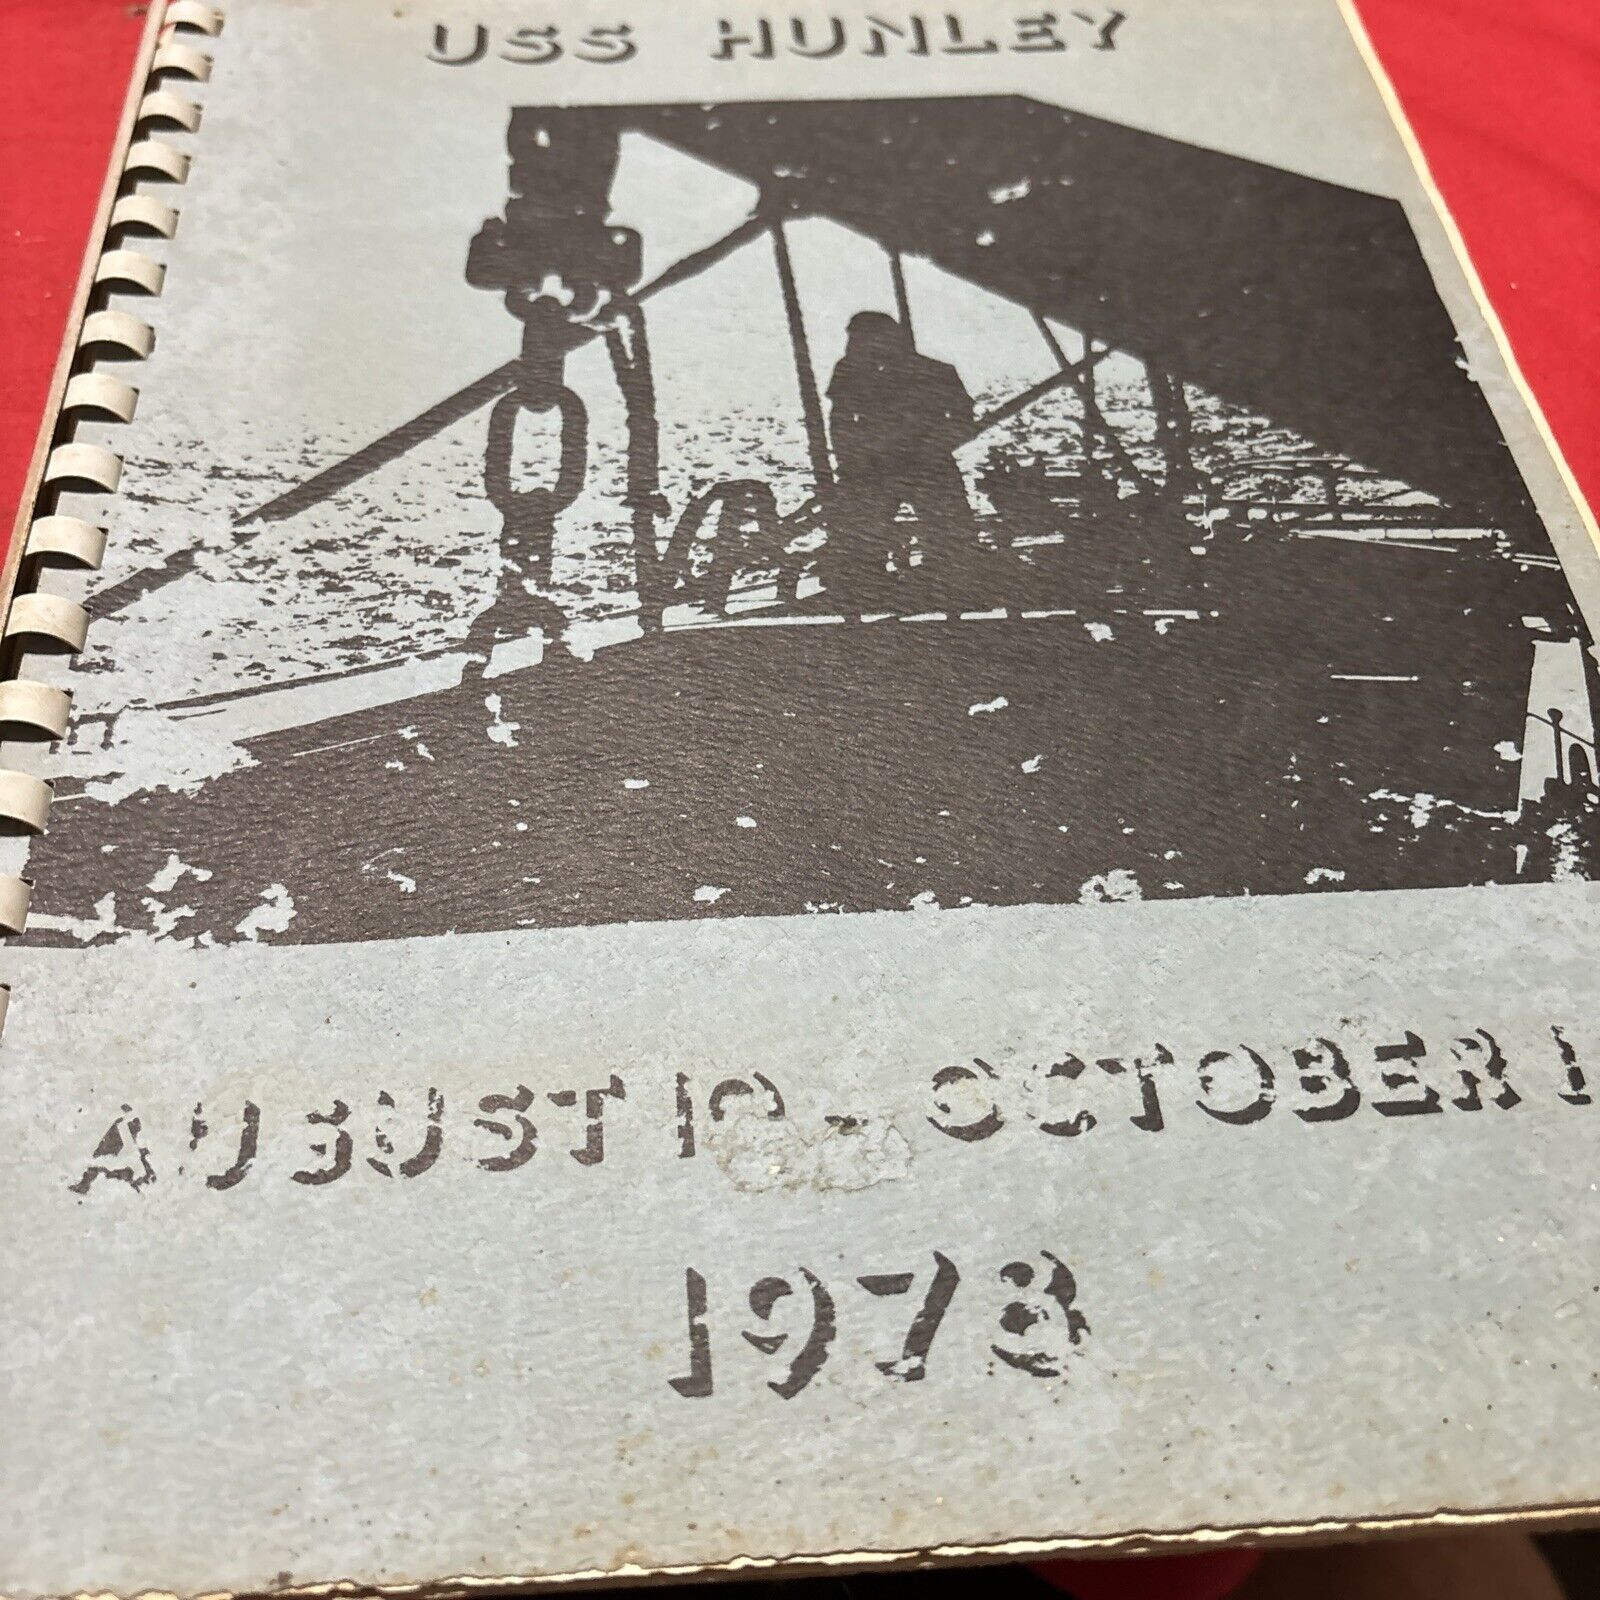 USS Huntley 1978 Yearbook